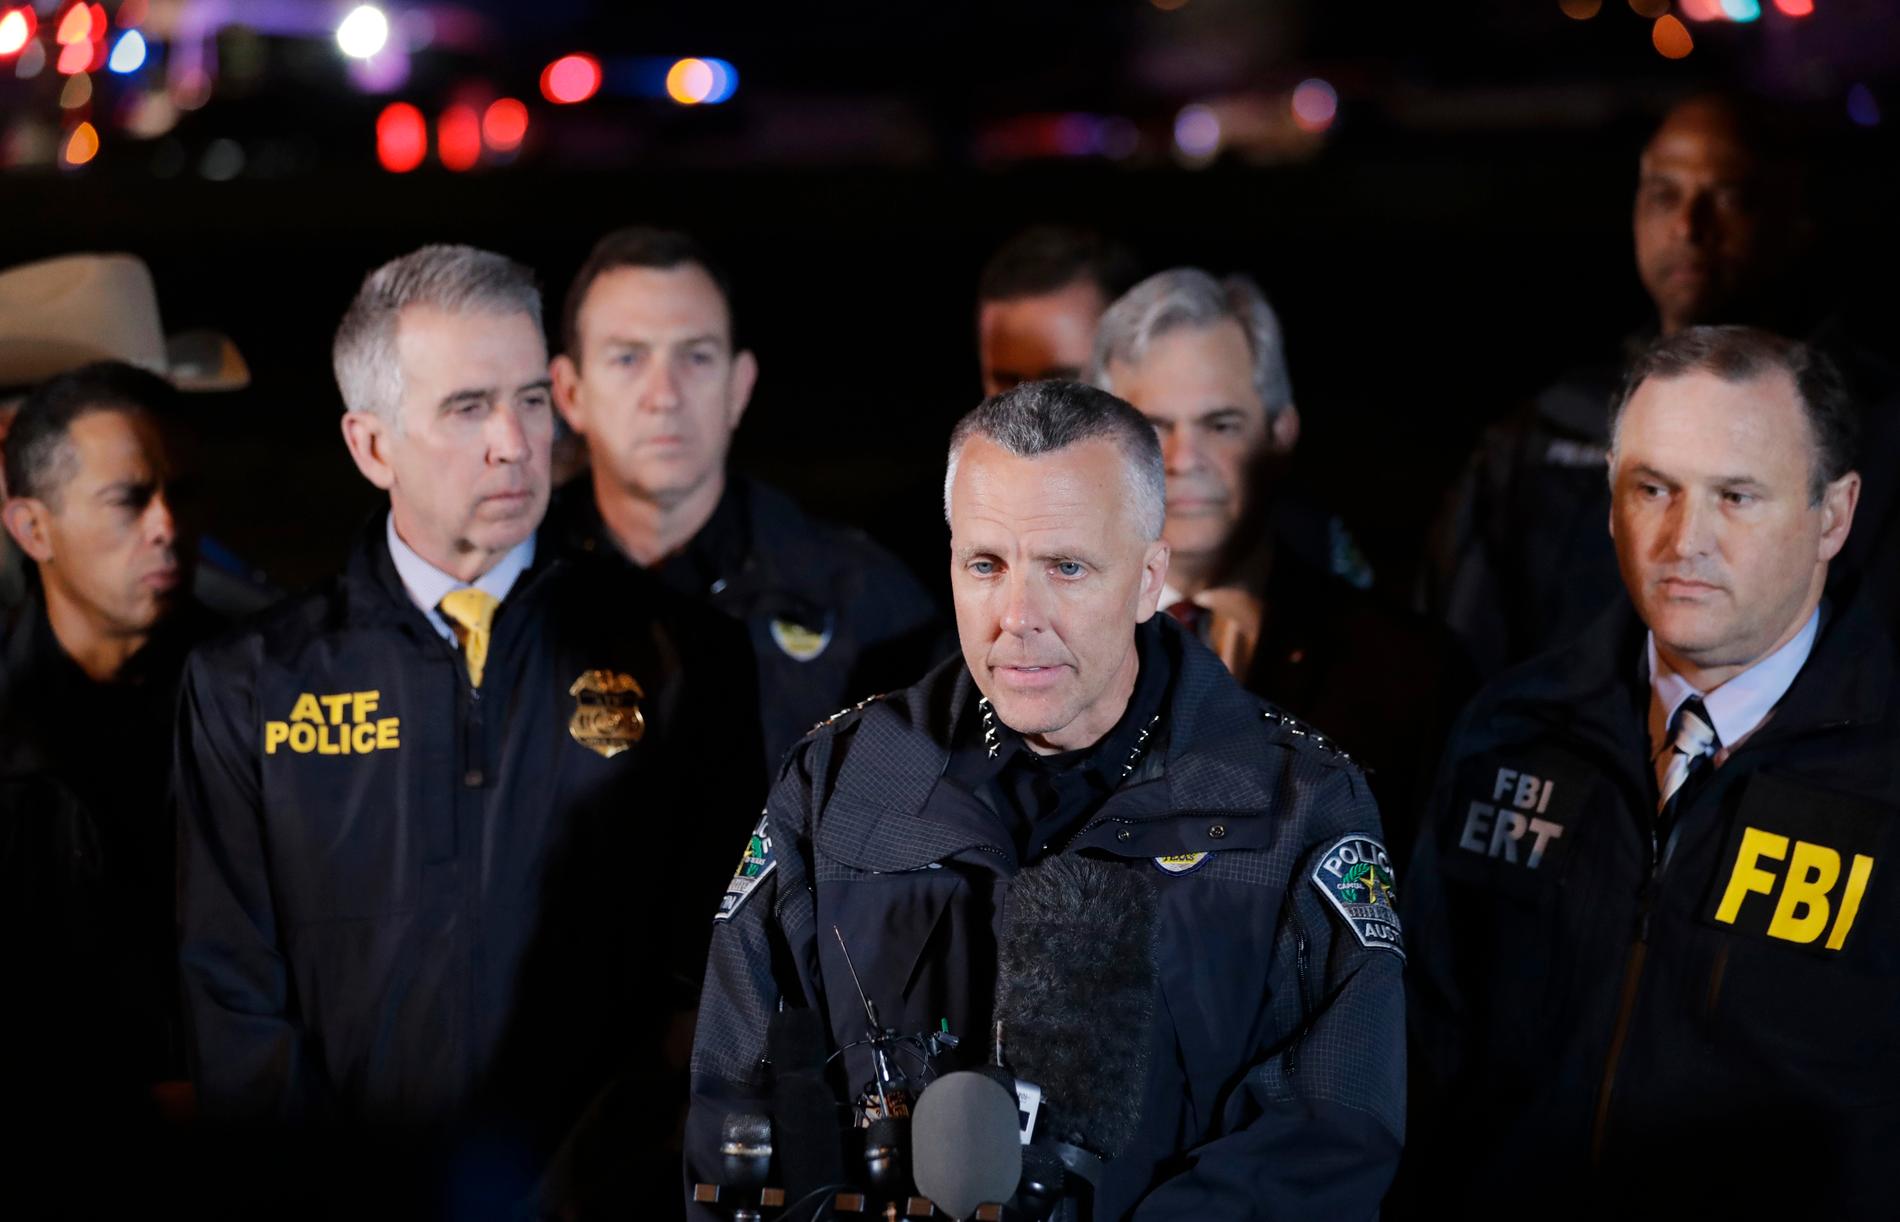 Polischefen i Austin, Brian Manley, informerar journalister. Motivet till sprängningarna är ännu oklart.